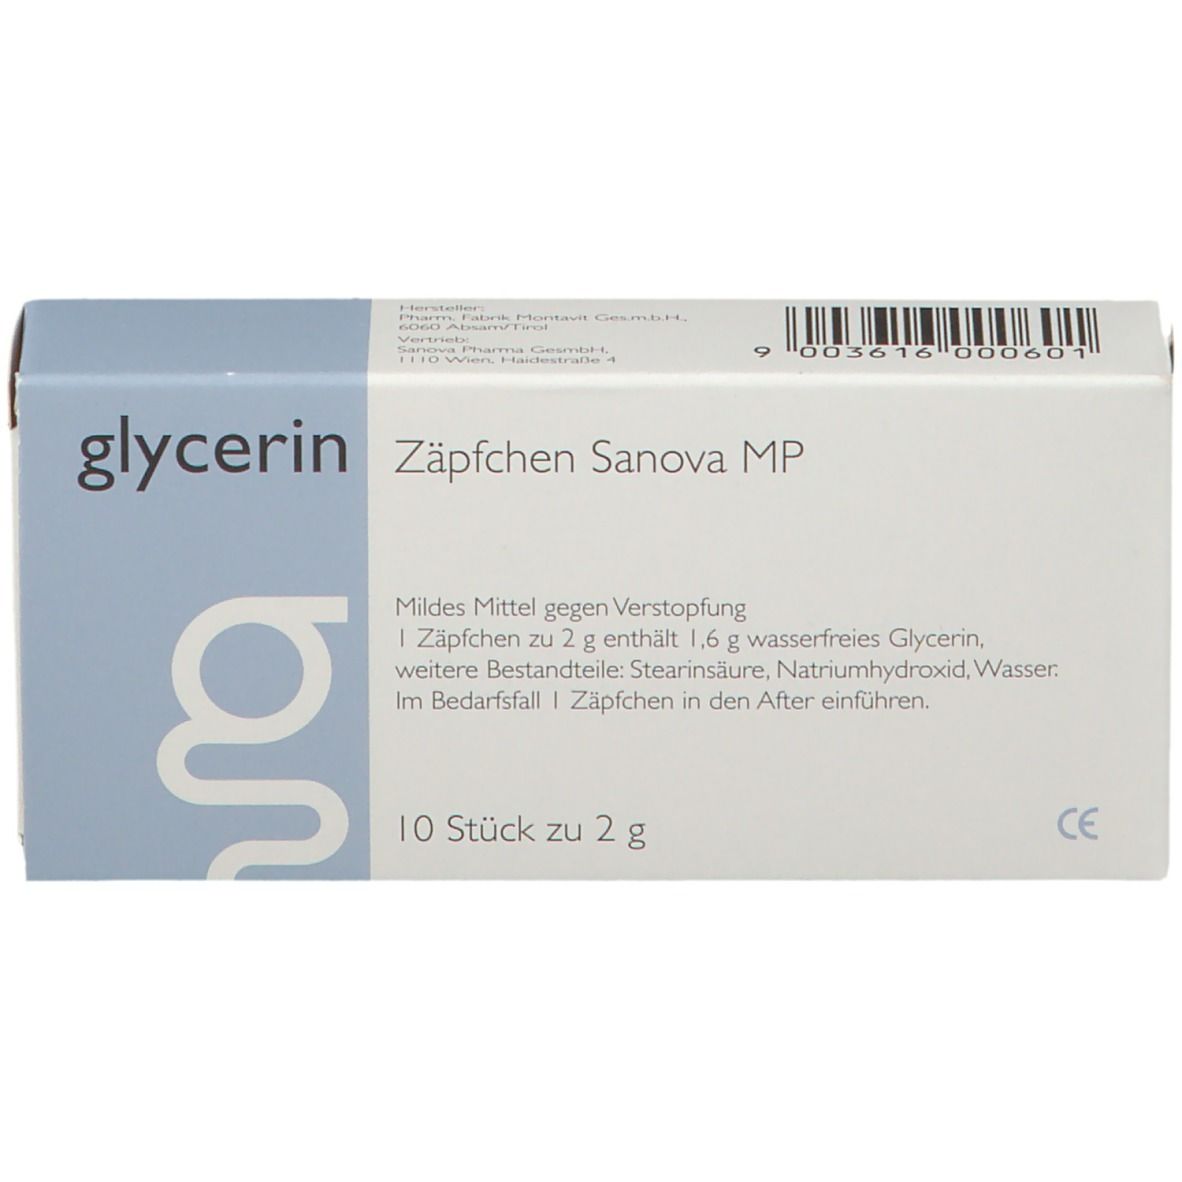 glycerin Zäpfchen Sanova MP 2 g